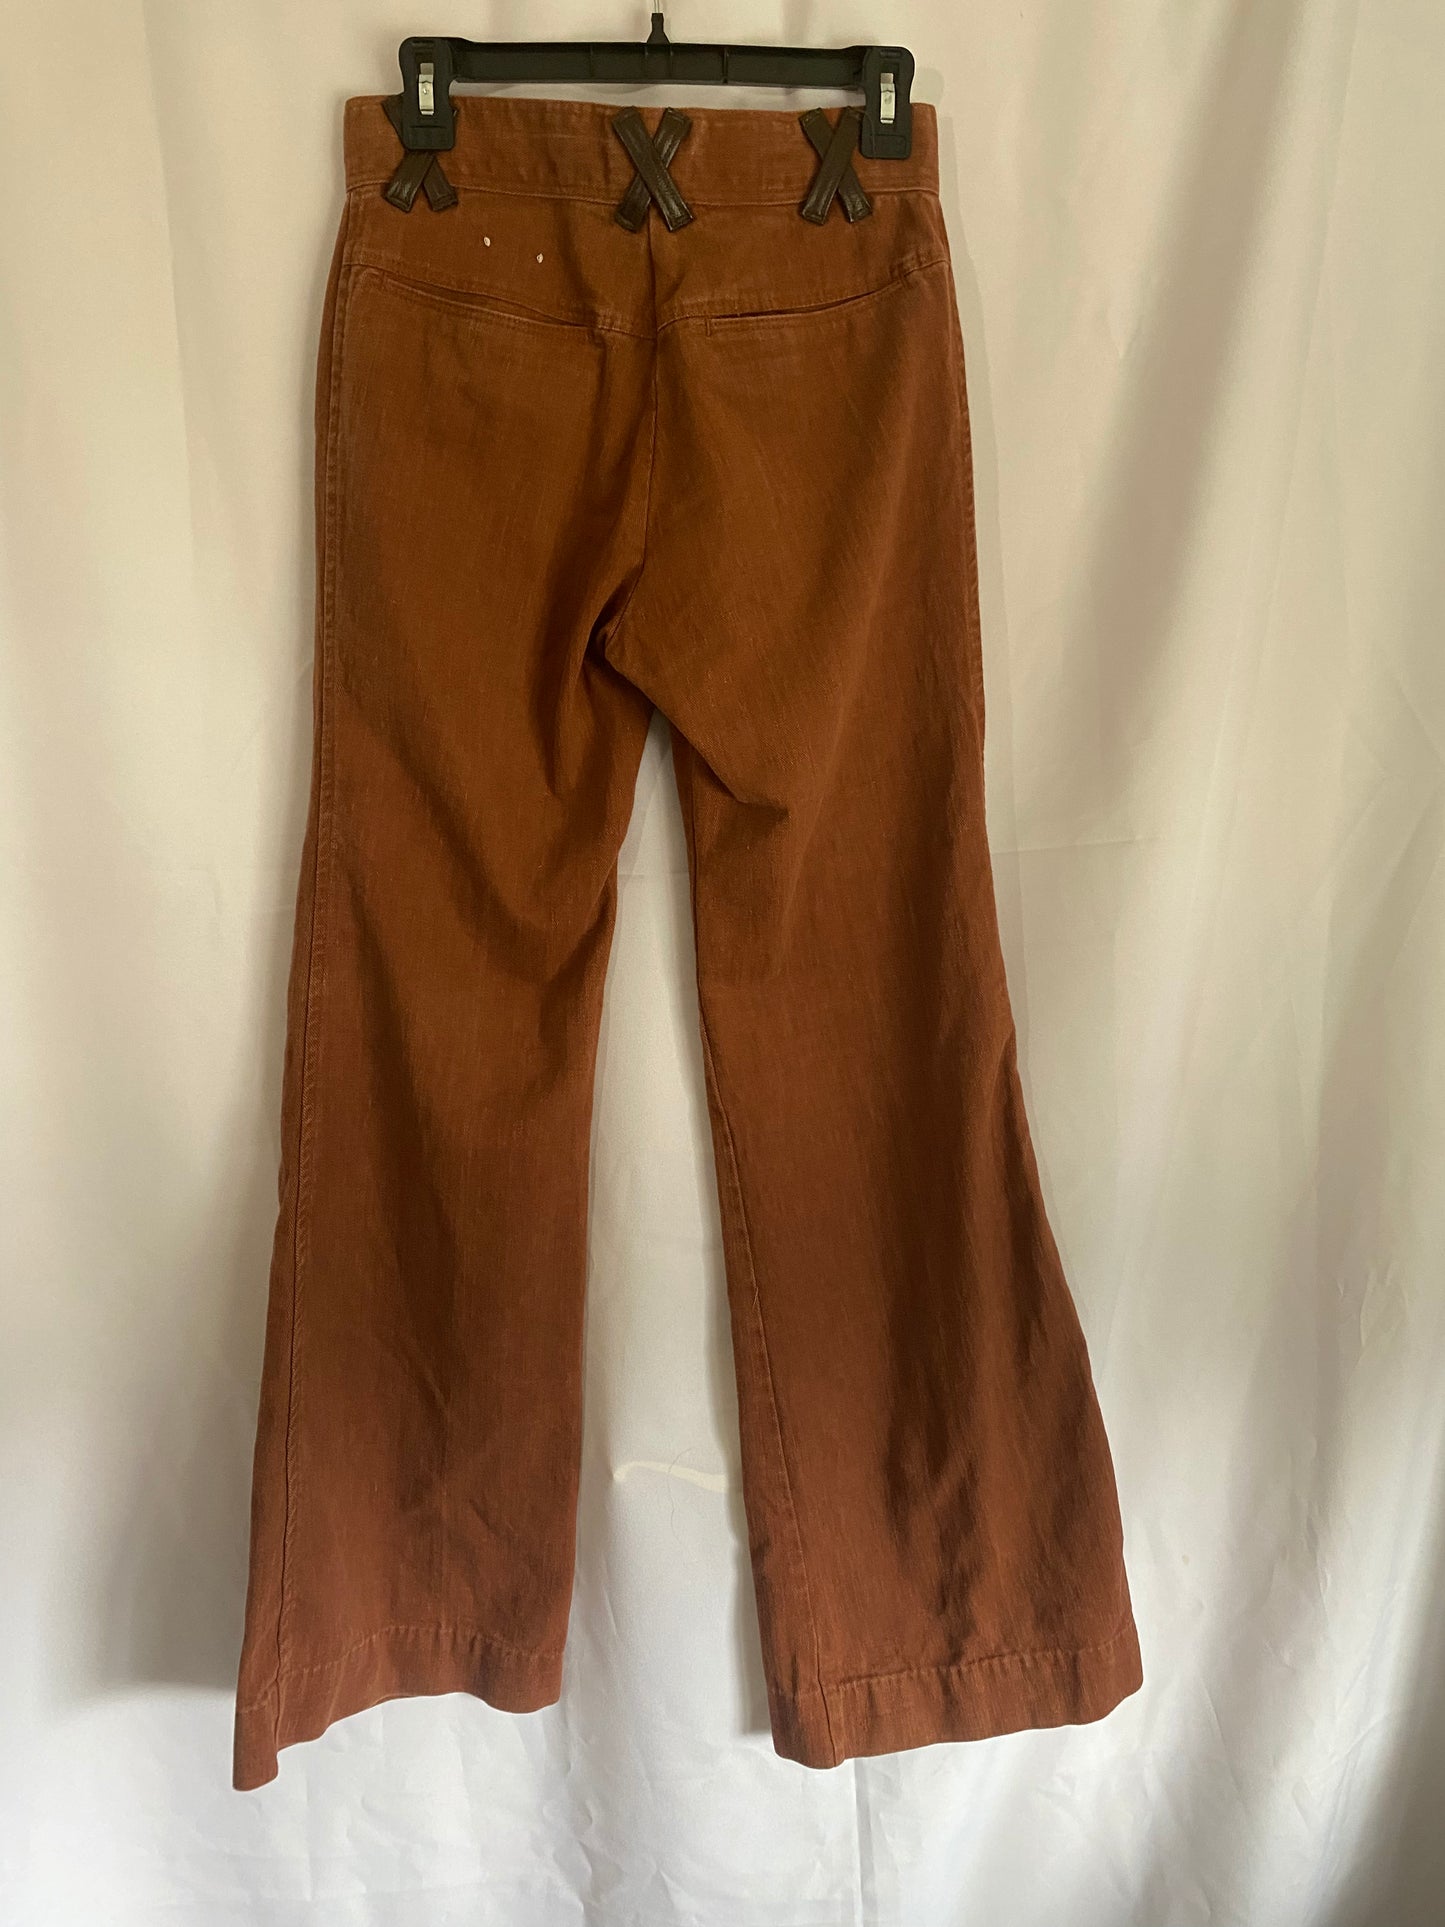 Tan/Brown Bellbottom Pants